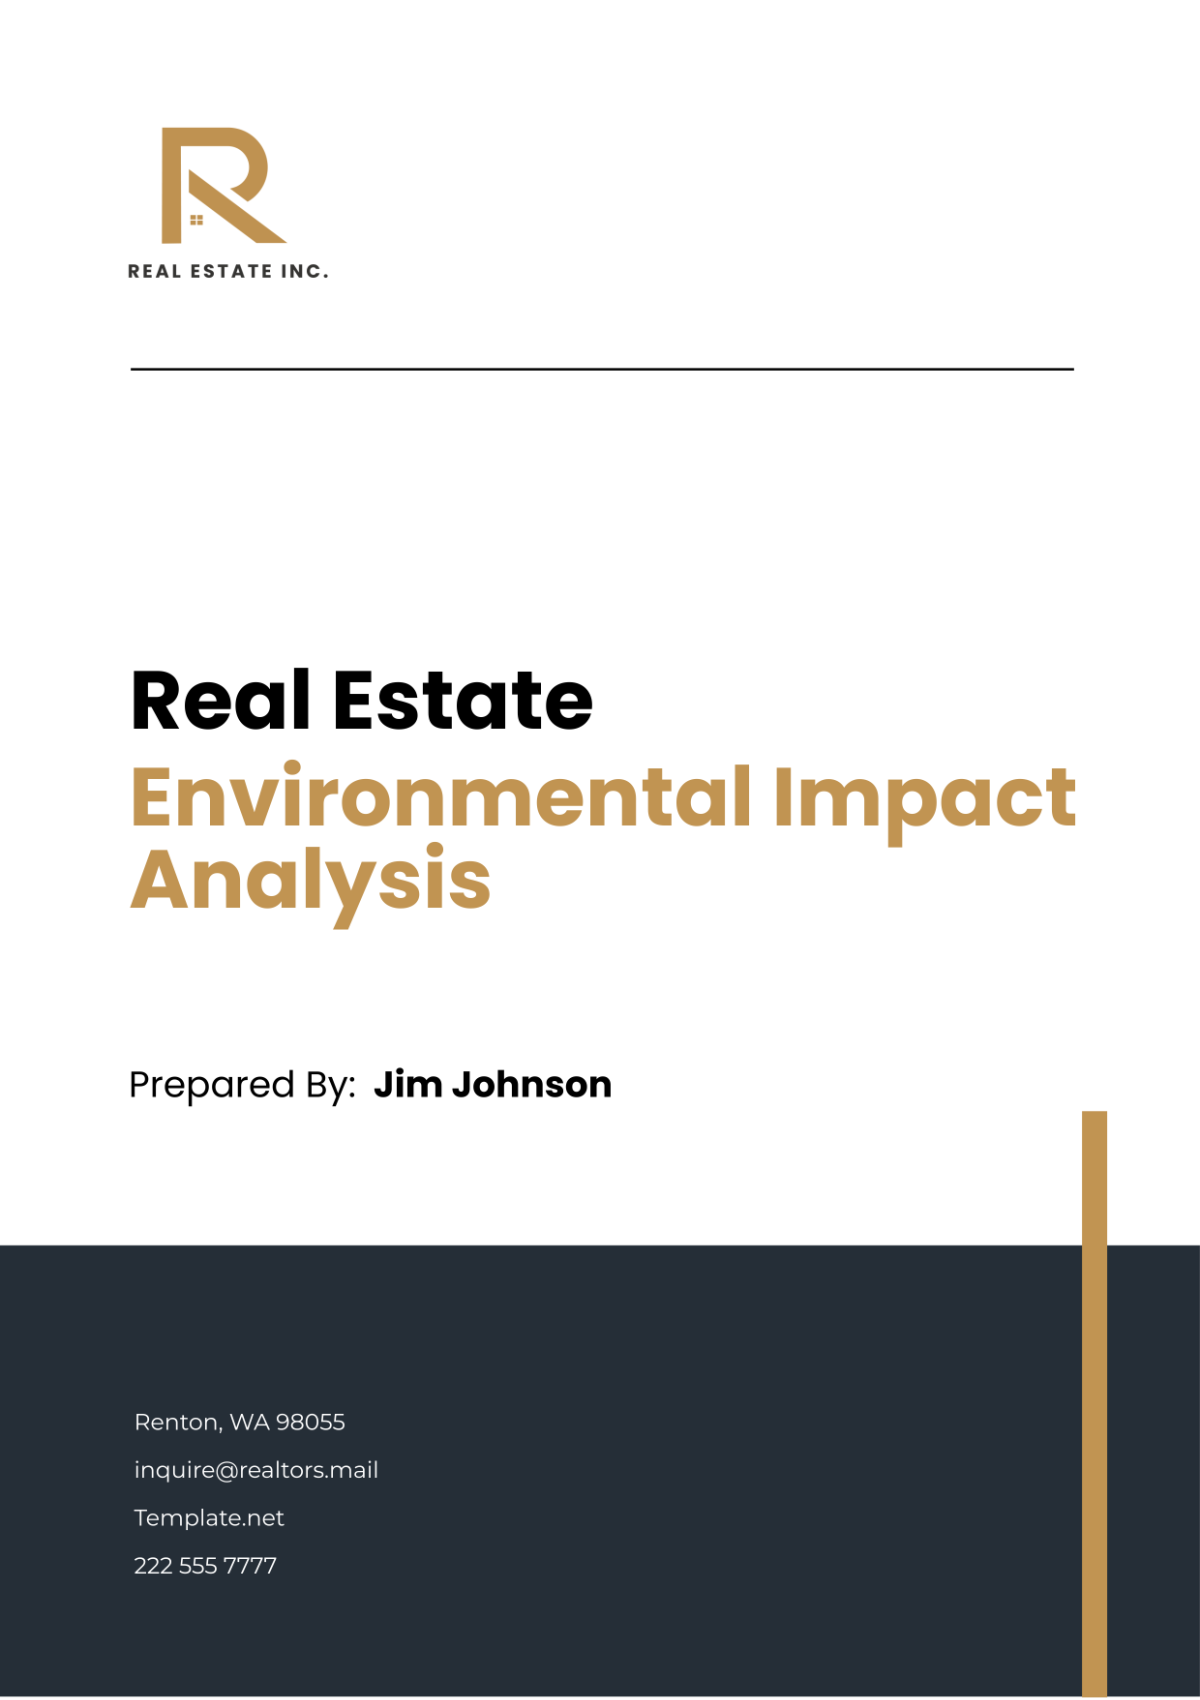 Free Real Estate Environmental Impact Analysis Template